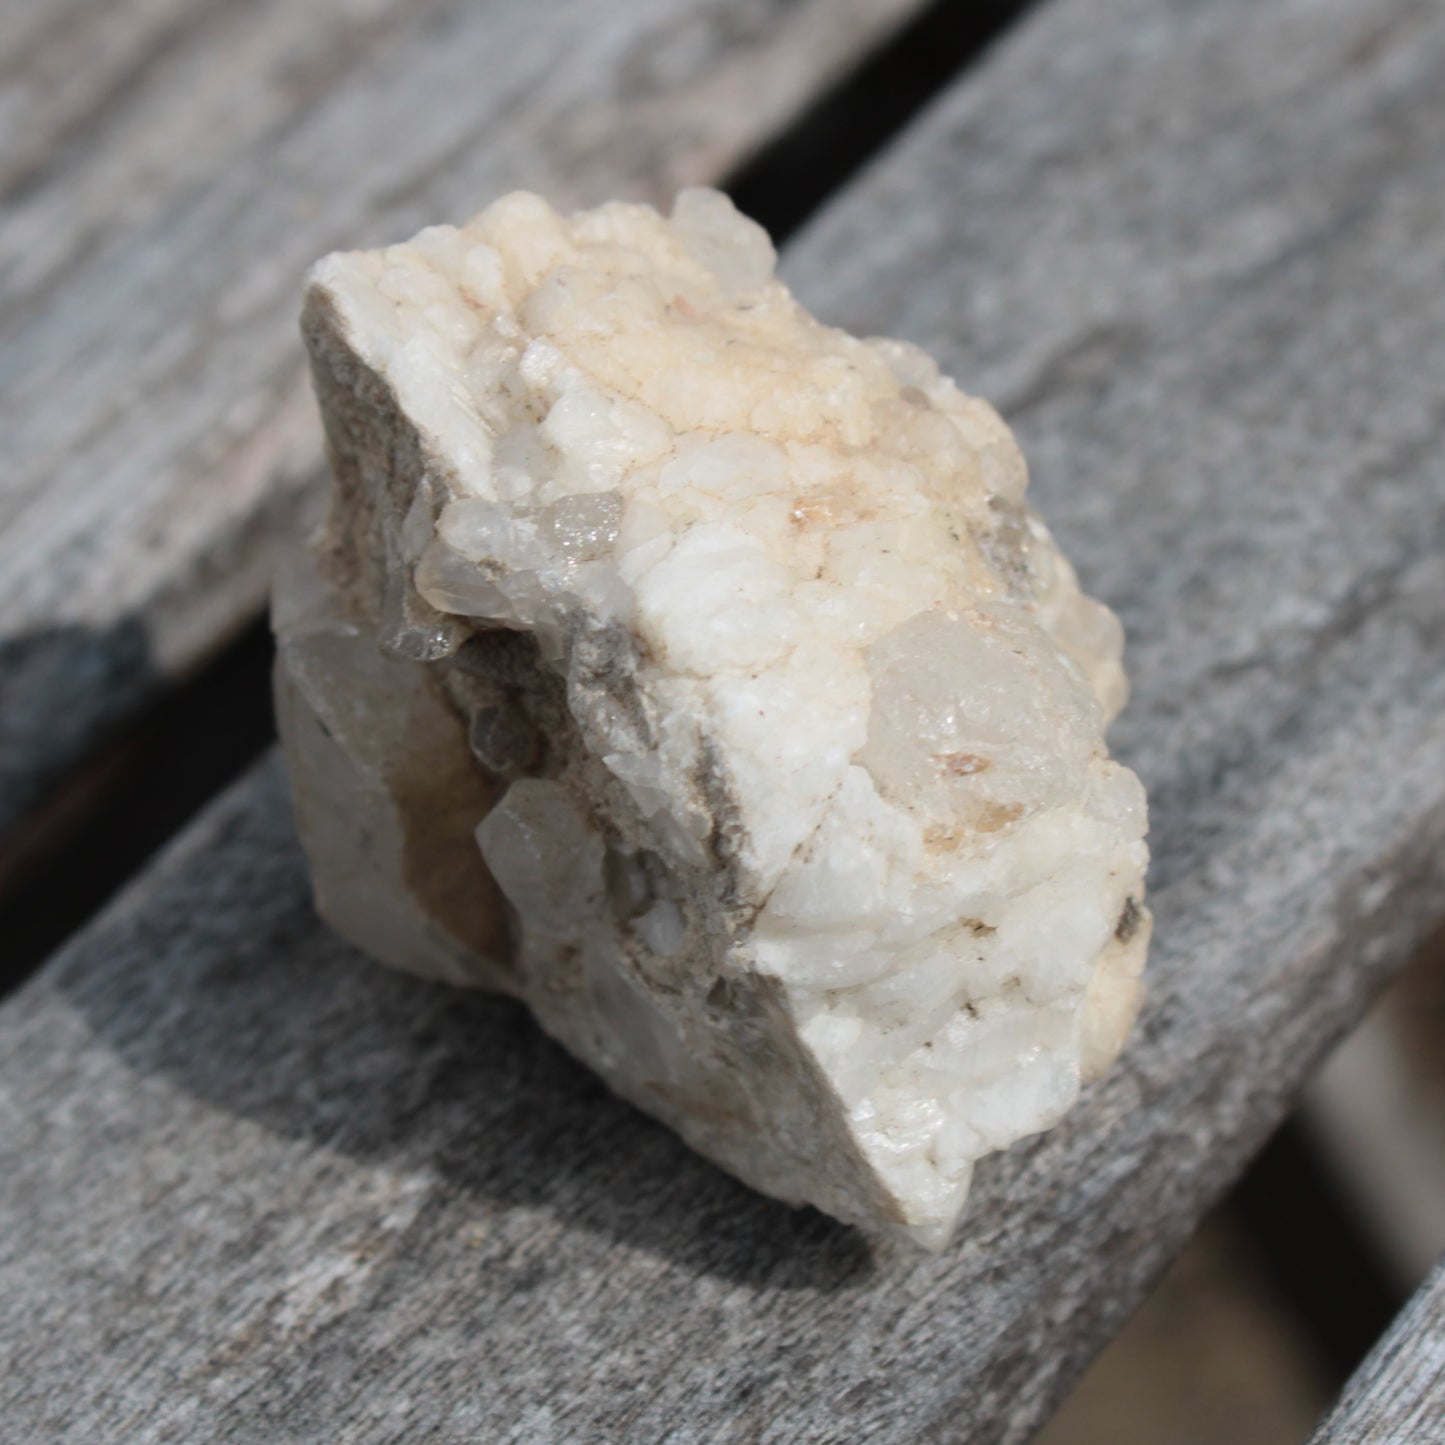 Quartz crystals in Calcite matrix from Pakistan 313.8ct 62.8g